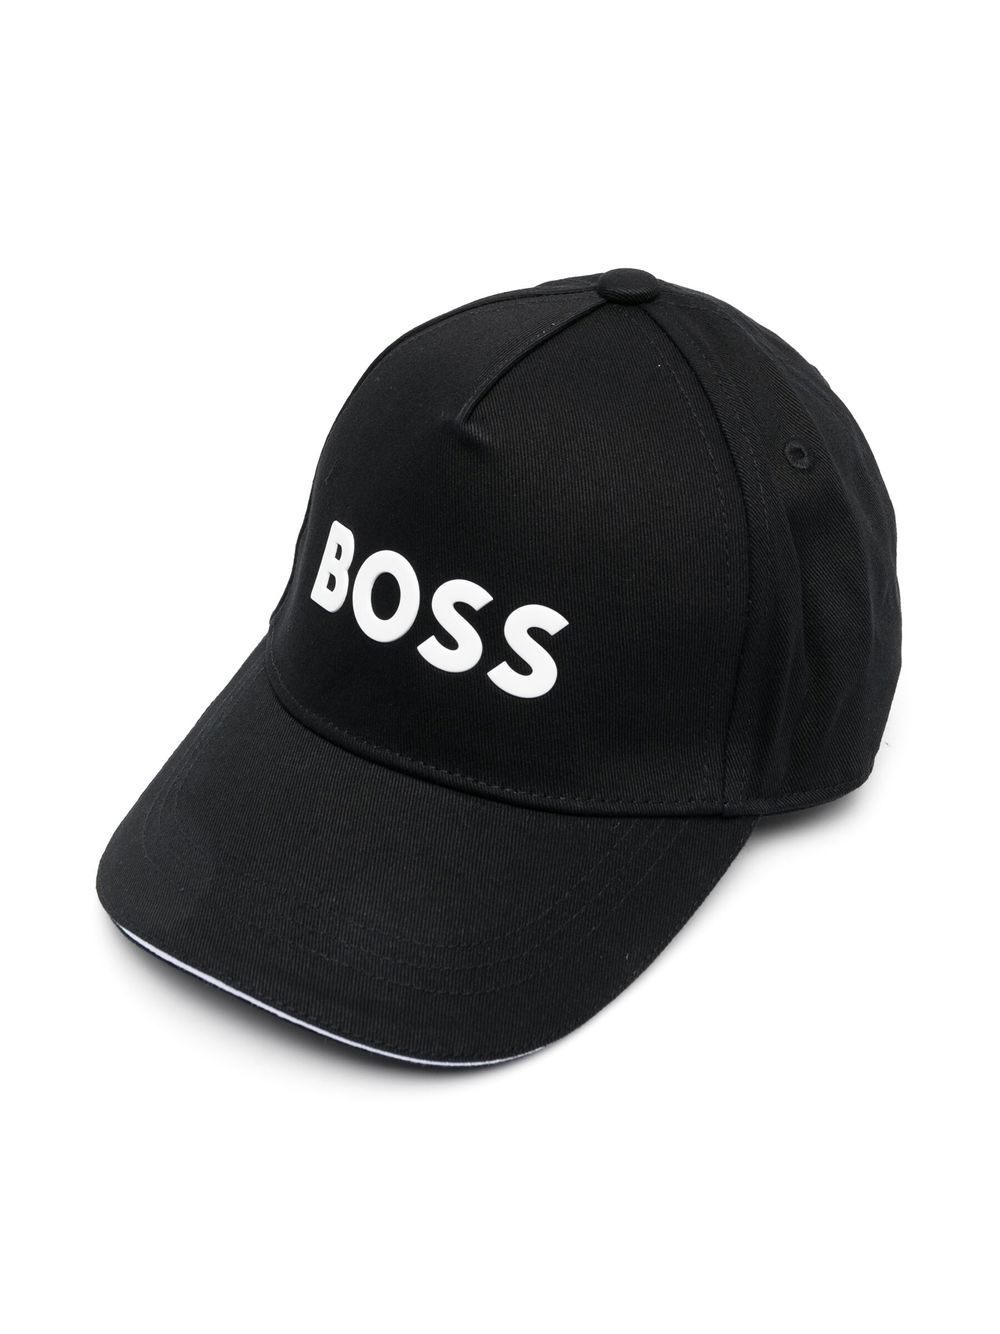 hugo-boss-kids-logo-fitted-cap-j21271-09b